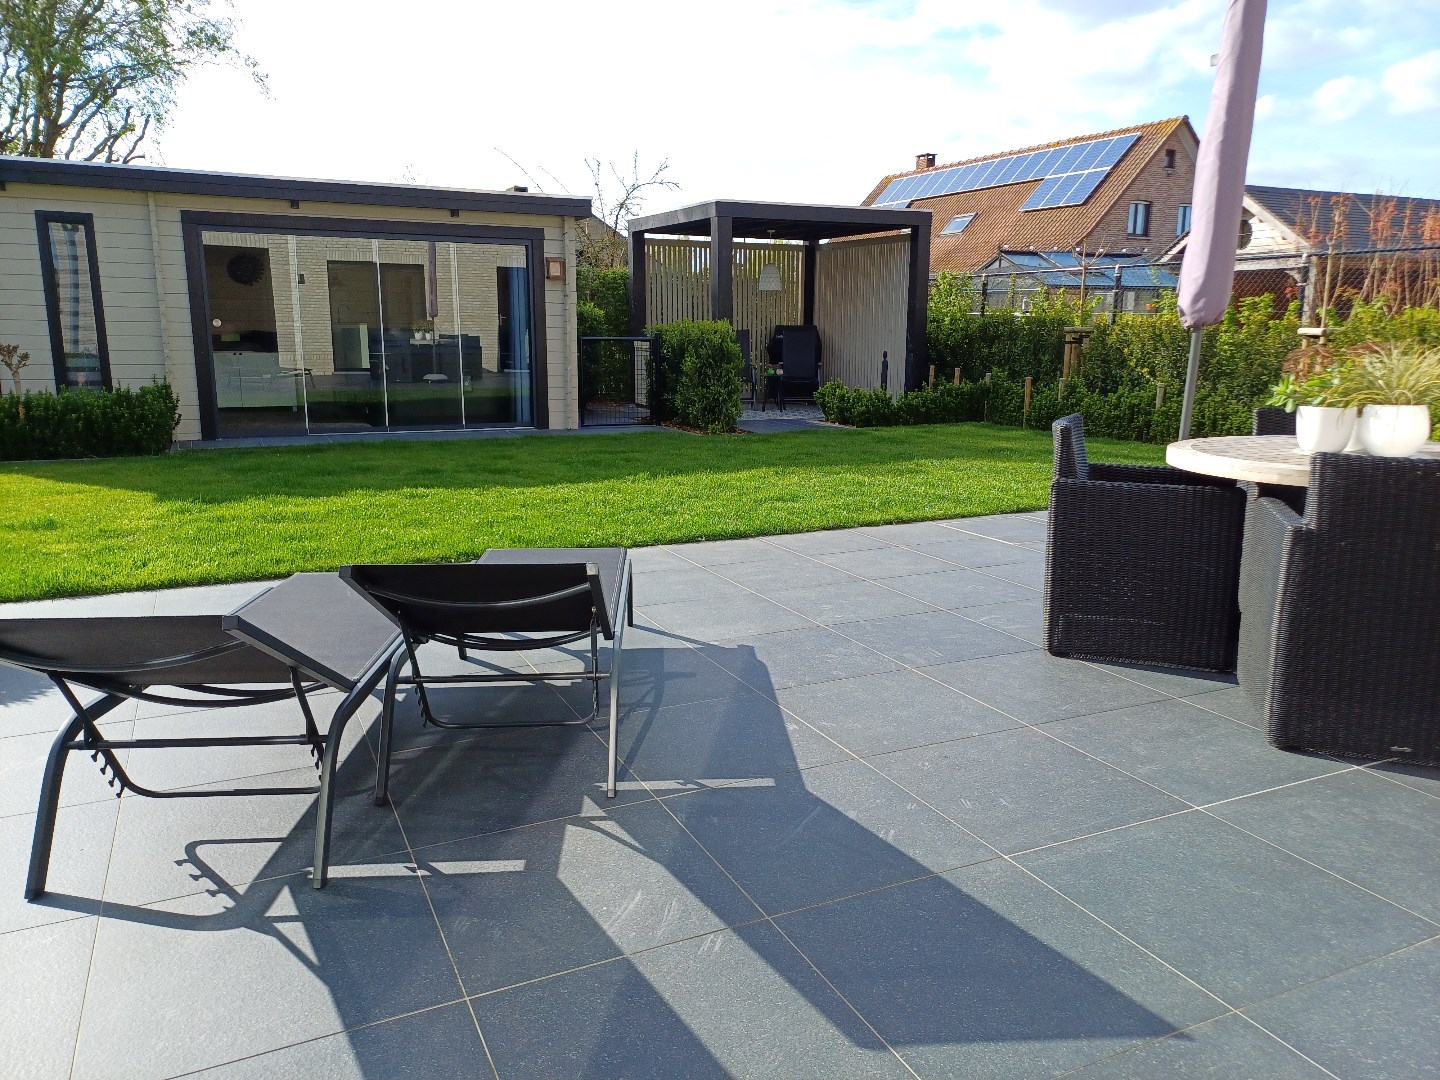 Nieuwe, super energiezuinige villa met vijf slaapkamers en zonnige tuin in doodlopende straat te Maldegem.  foto 1